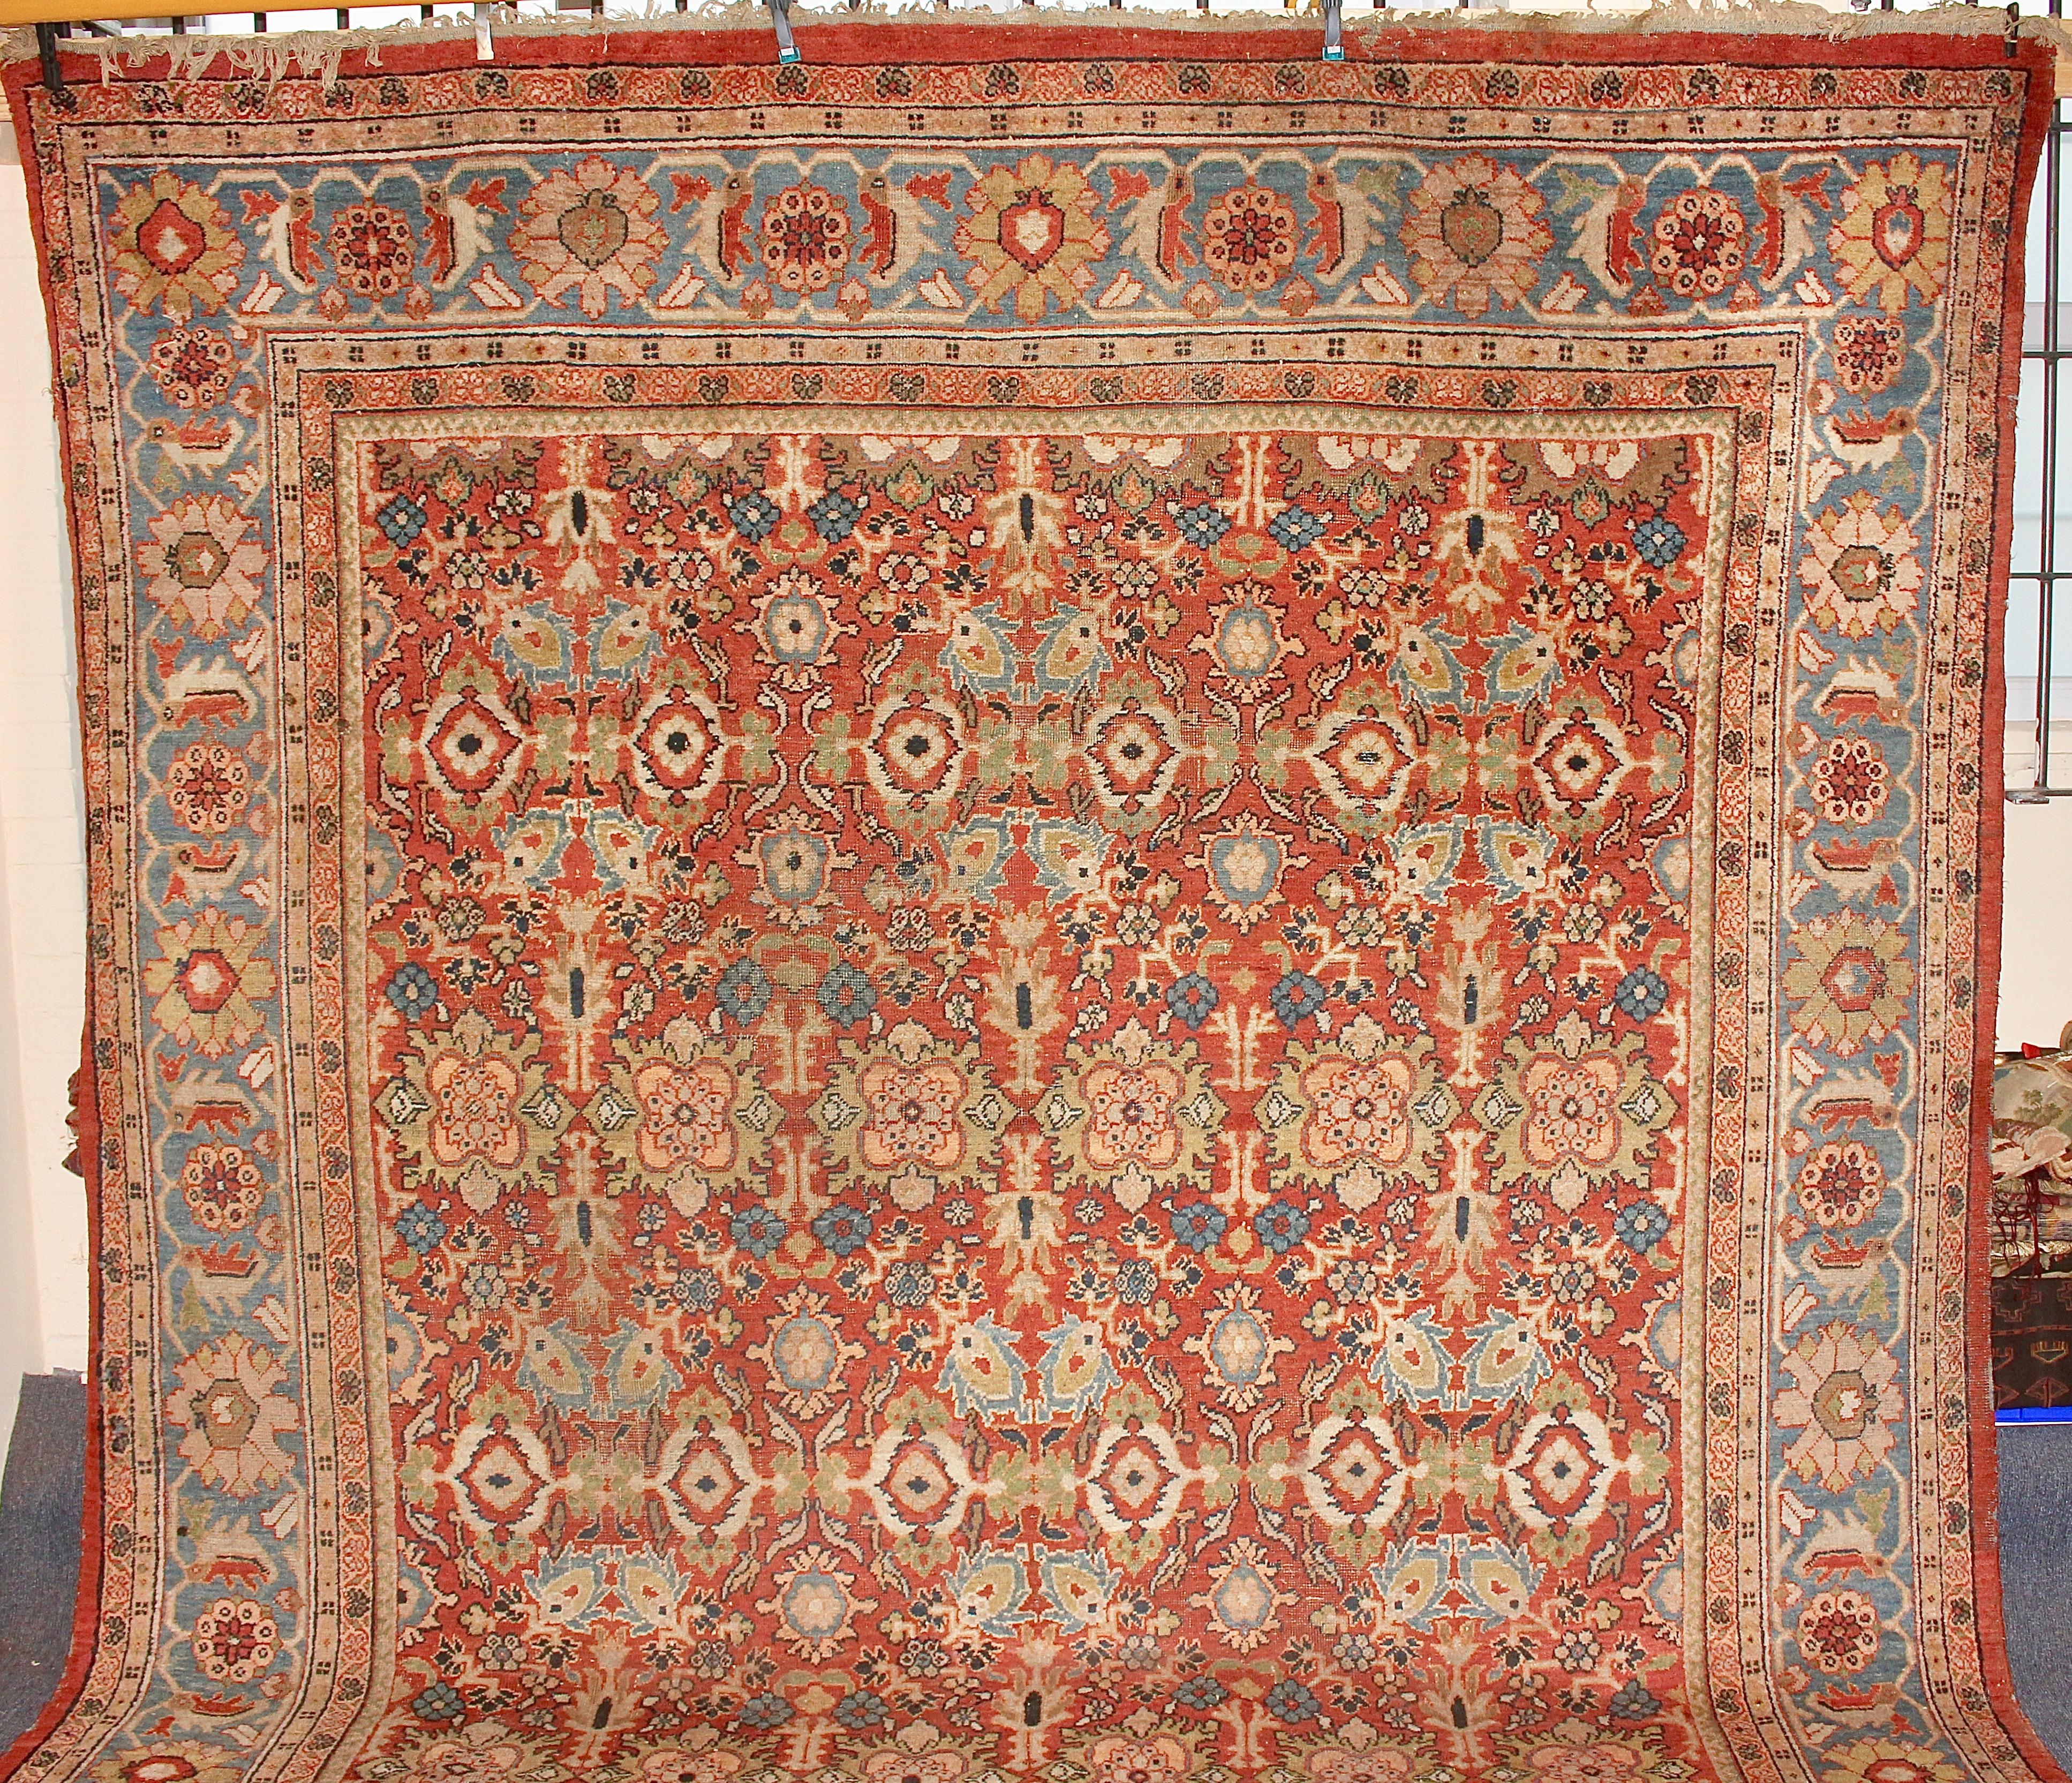 Hochwertiger, großer antiker Orientteppich. Teppichboden.

Handgeknüpft. Starke natürliche Farben. Schönes Muster.
Der Teppich befindet sich in einem altersbedingten Zustand.
Teilweise Gebrauchsspuren.

Die Bilder sind Teil der